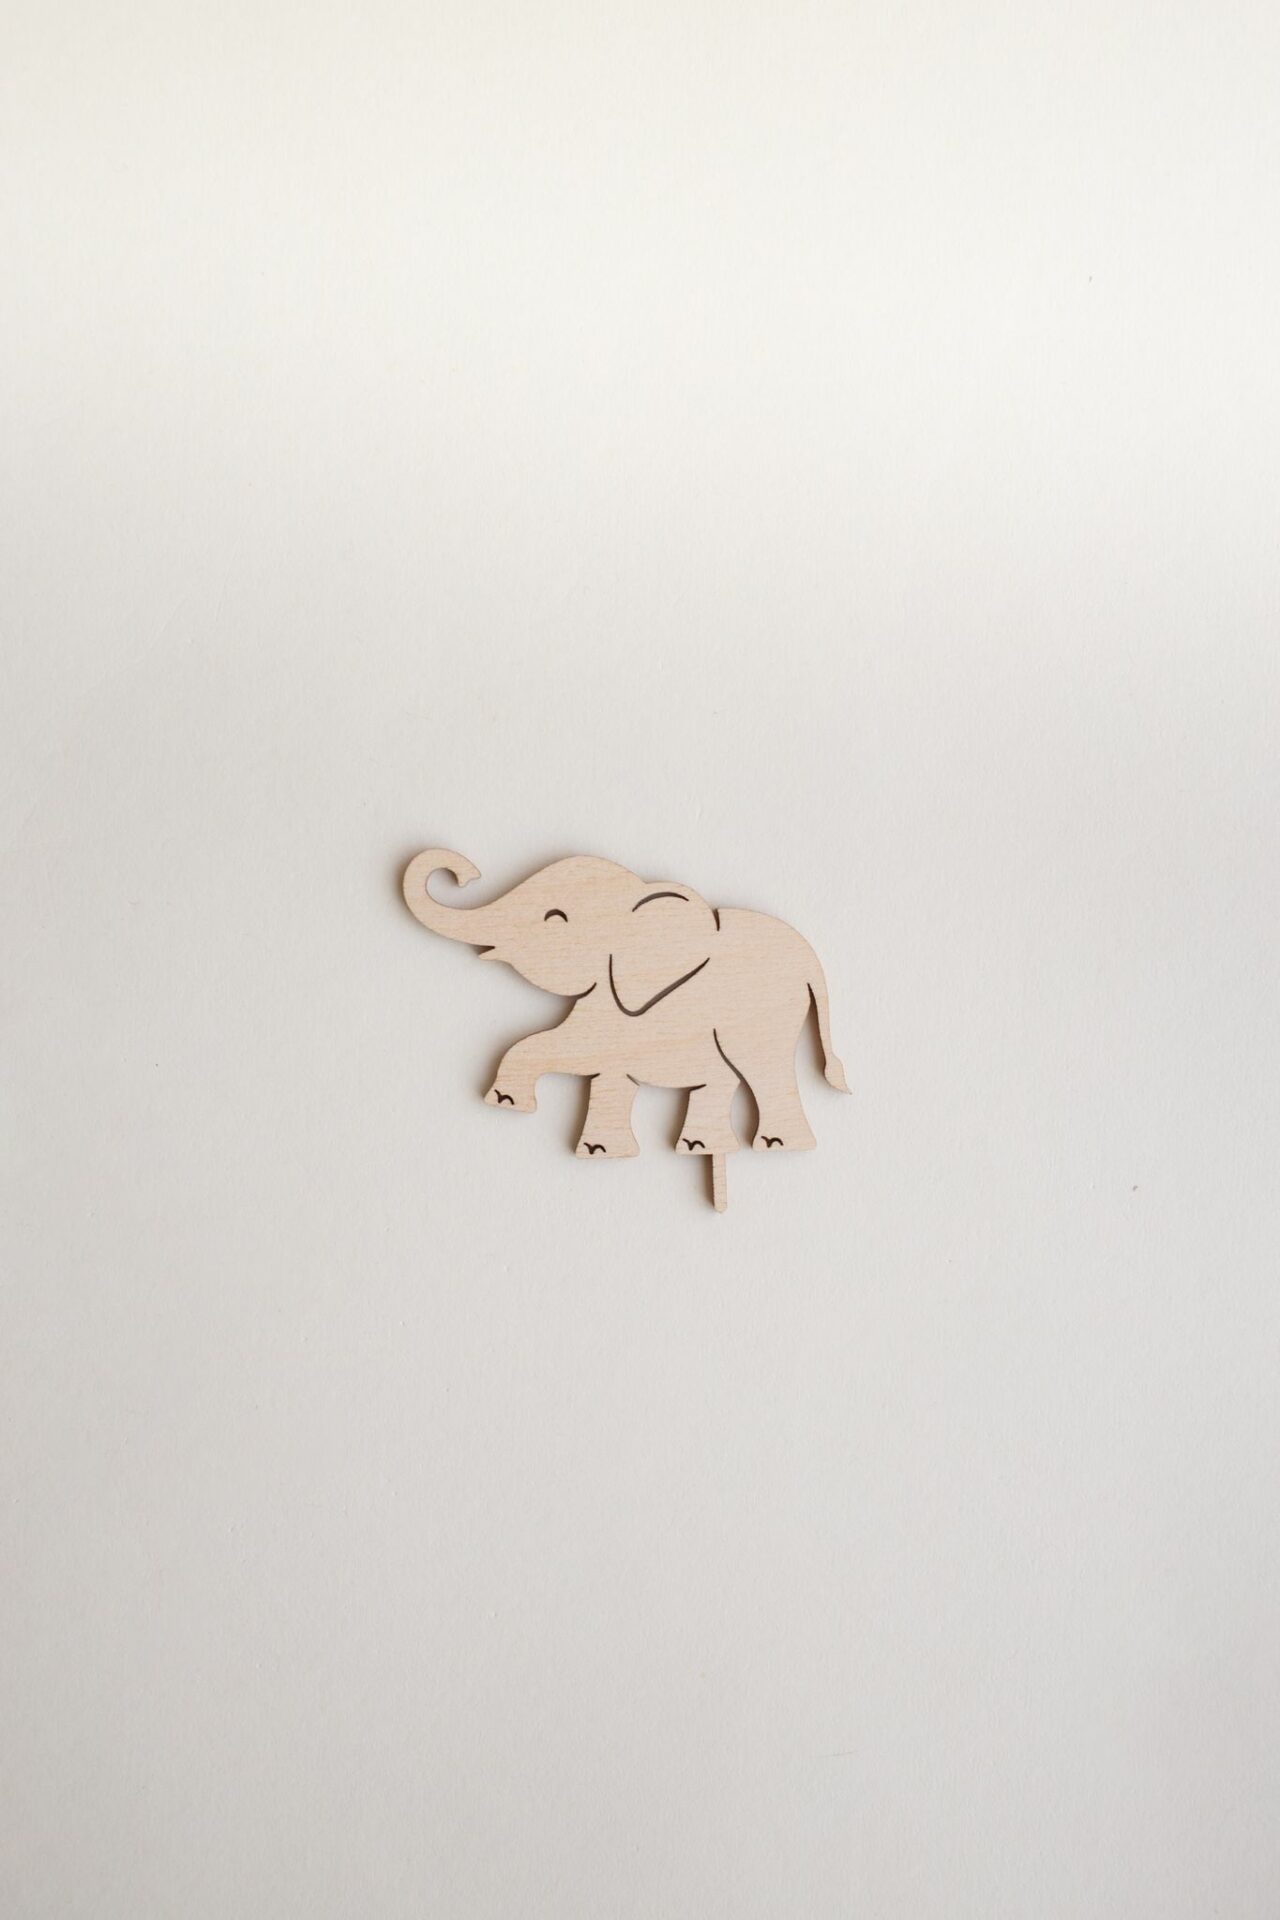 Stecker Elefant für den Geburtstagskranz als Tischdeko.